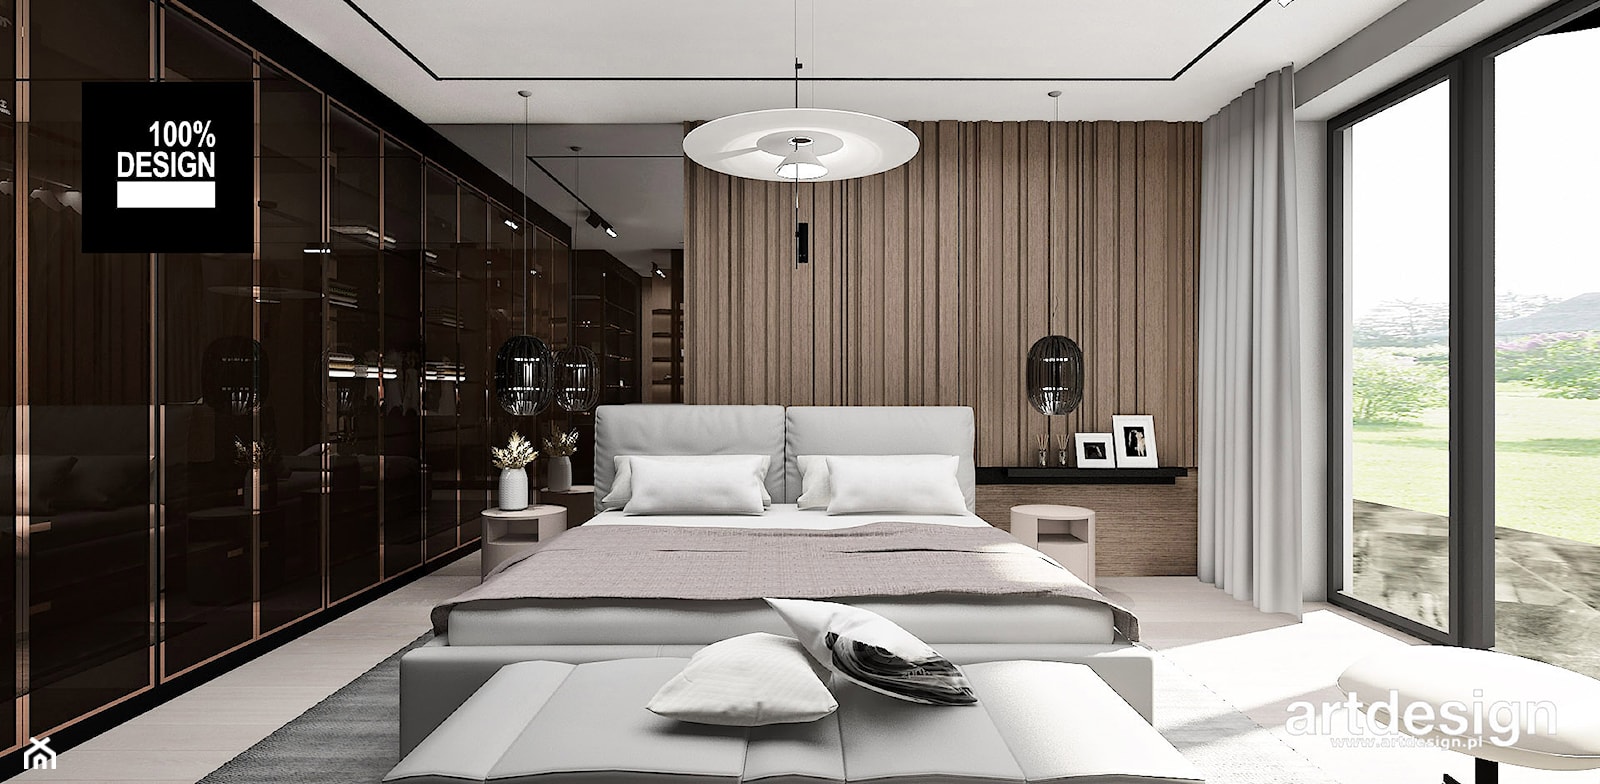 Efektowna sypialnia - zdjęcie od ARTDESIGN architektura wnętrz - Homebook